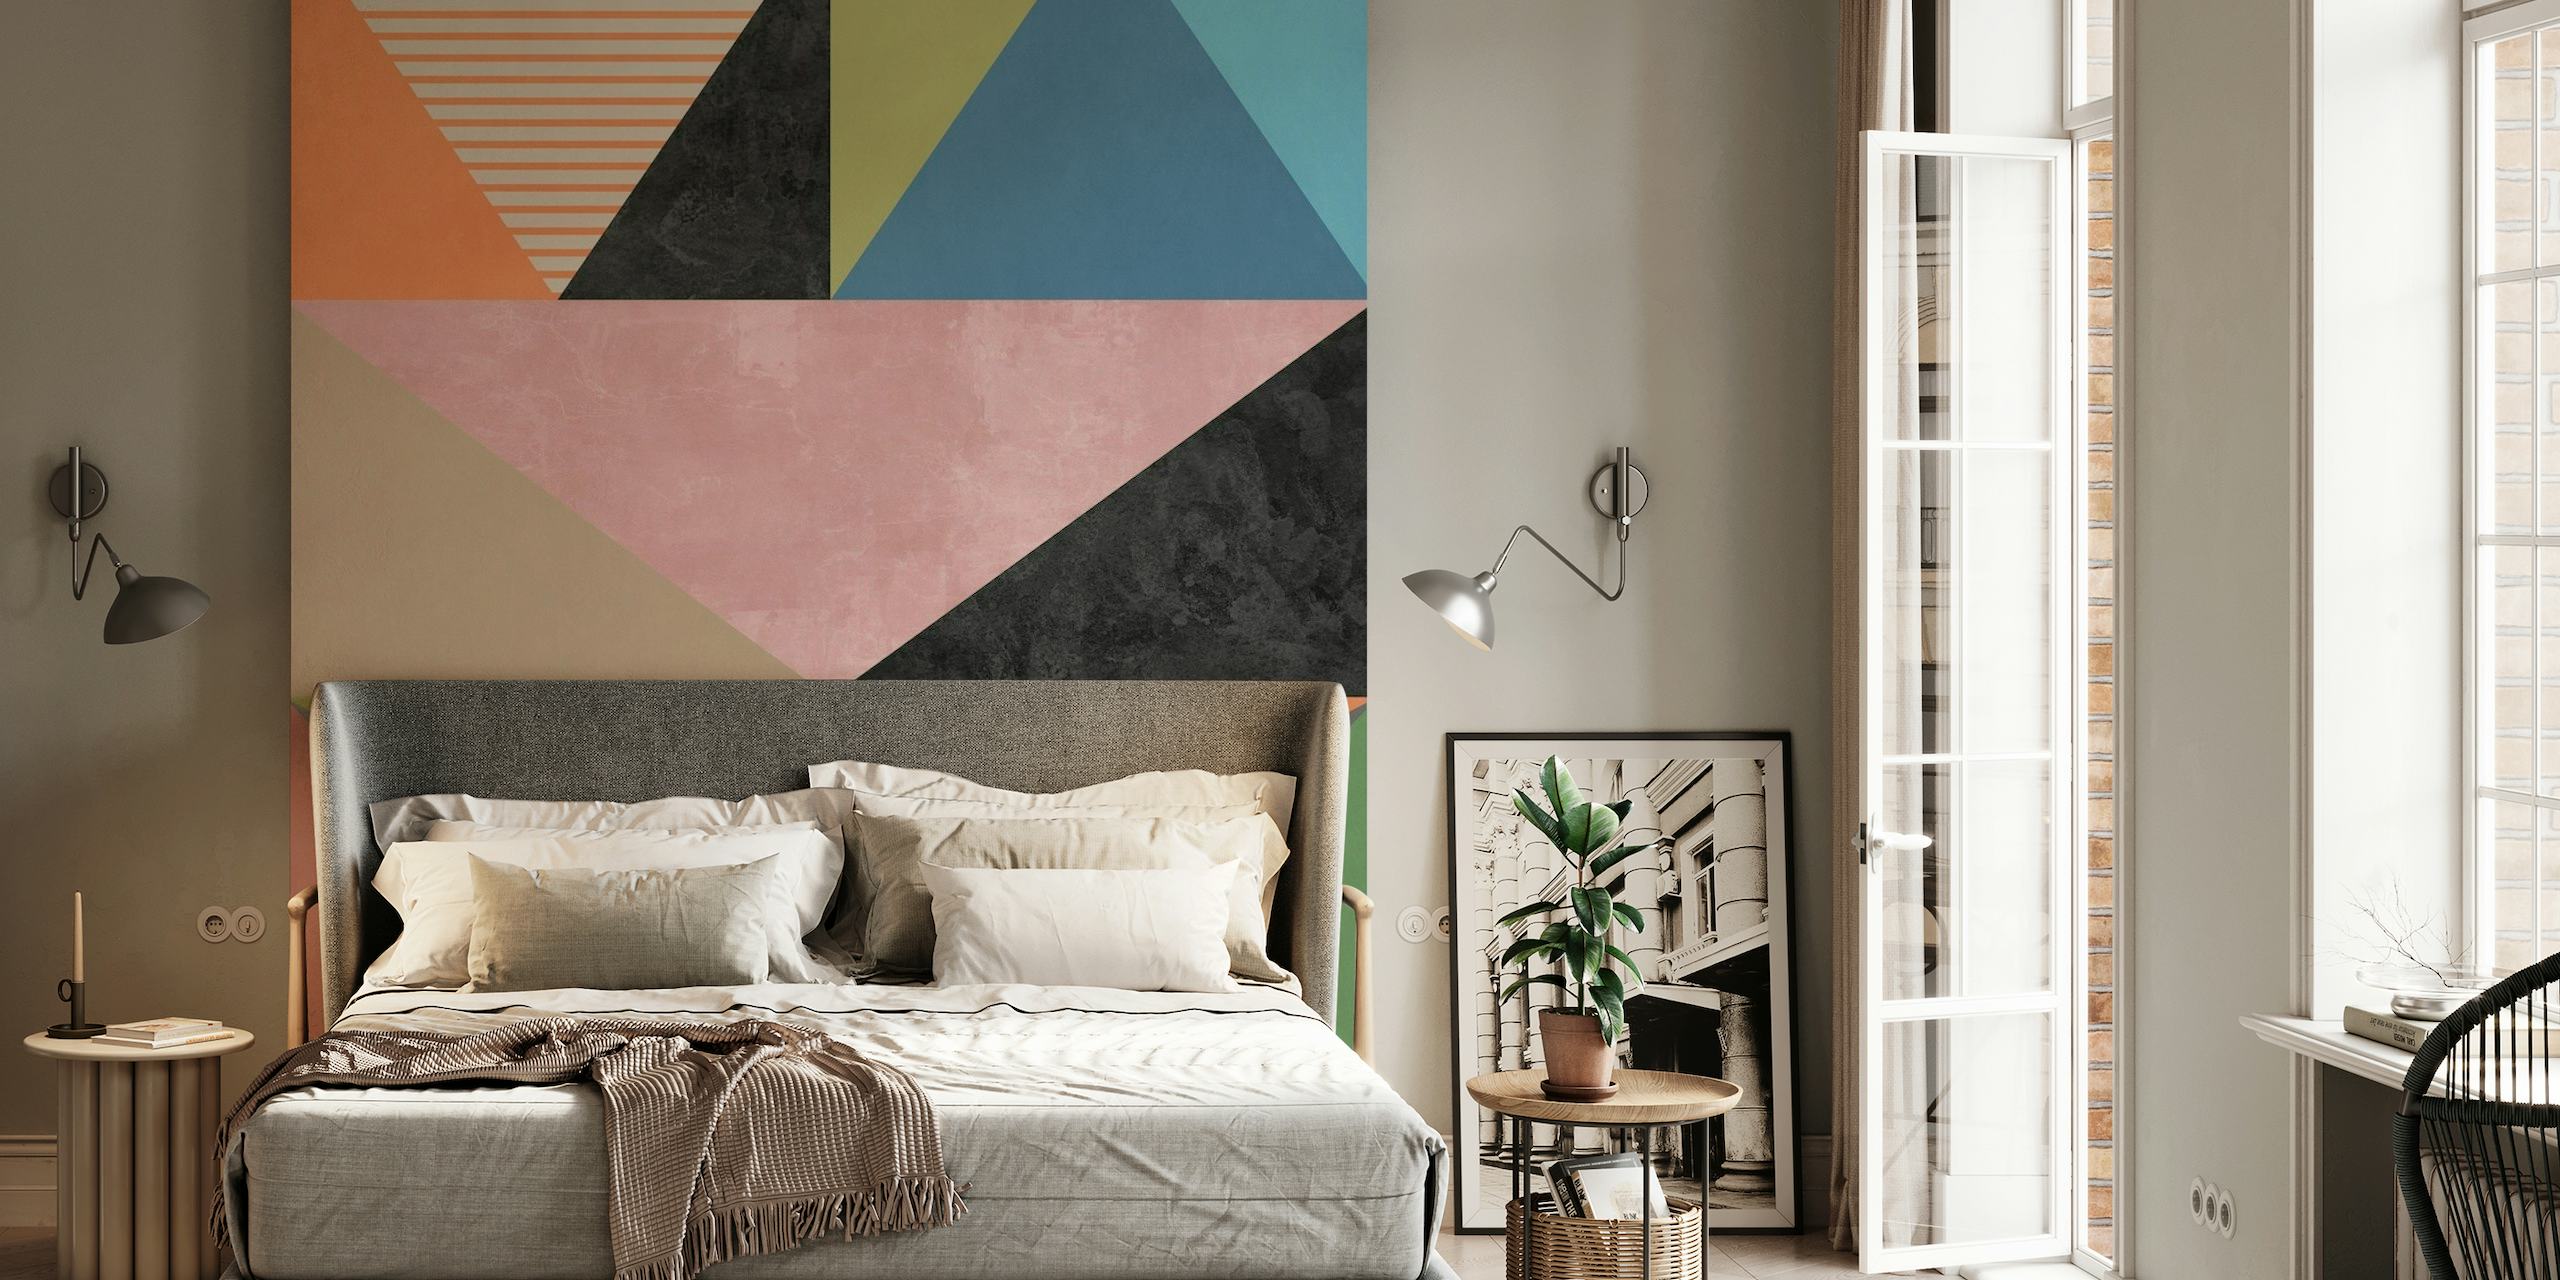 Apstraktni geometrijski zidni mural s pastelnim trokutima i prugastim uzorcima